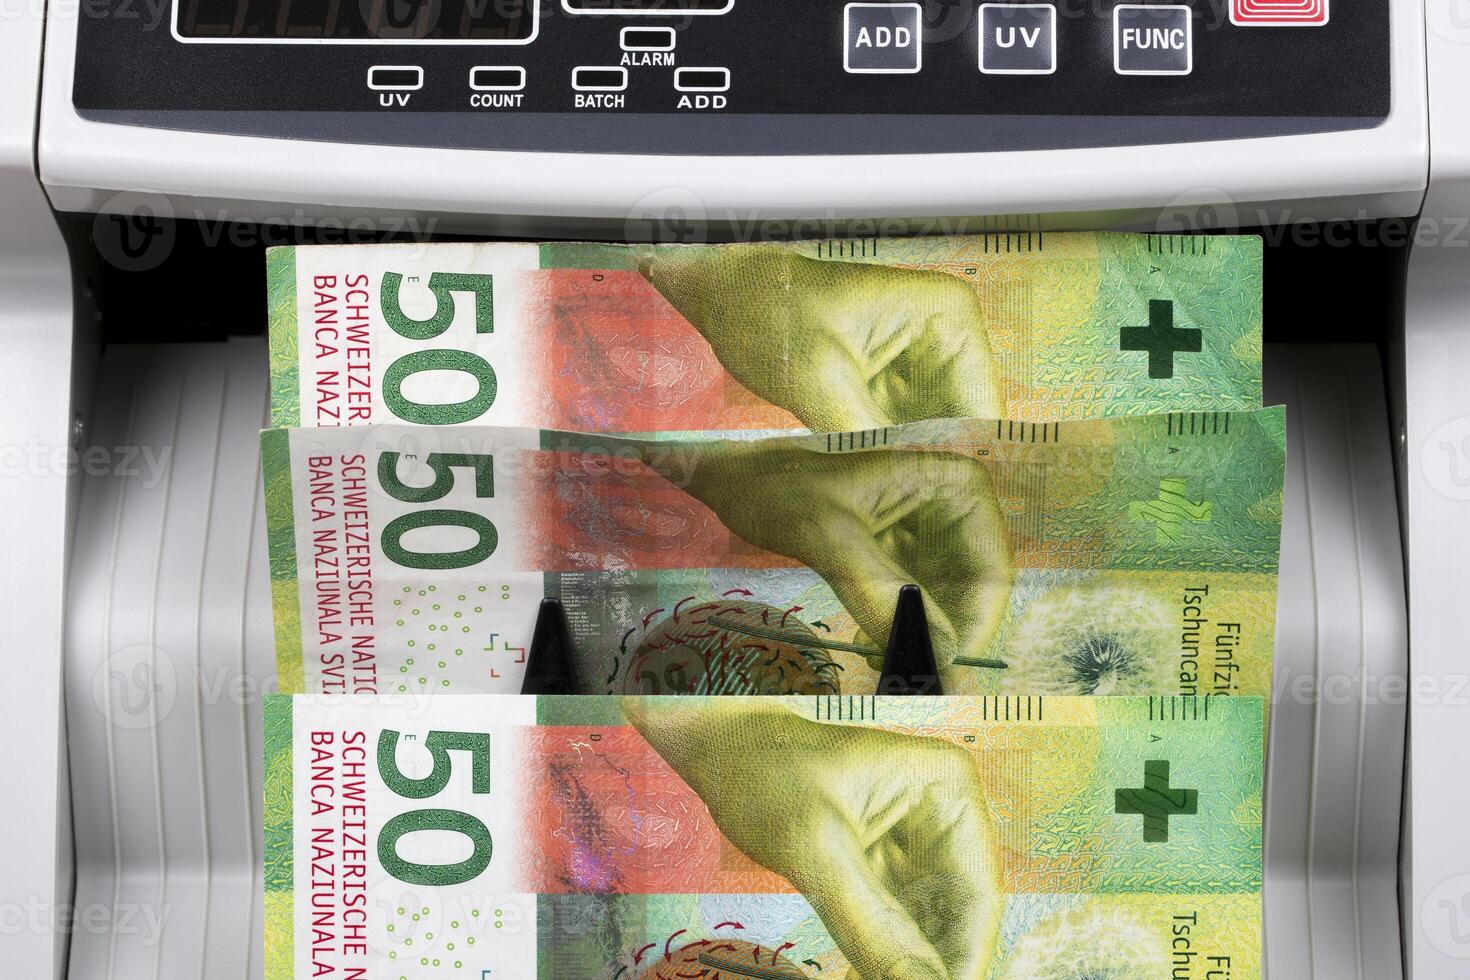 Suisse argent dans une compte machine photo